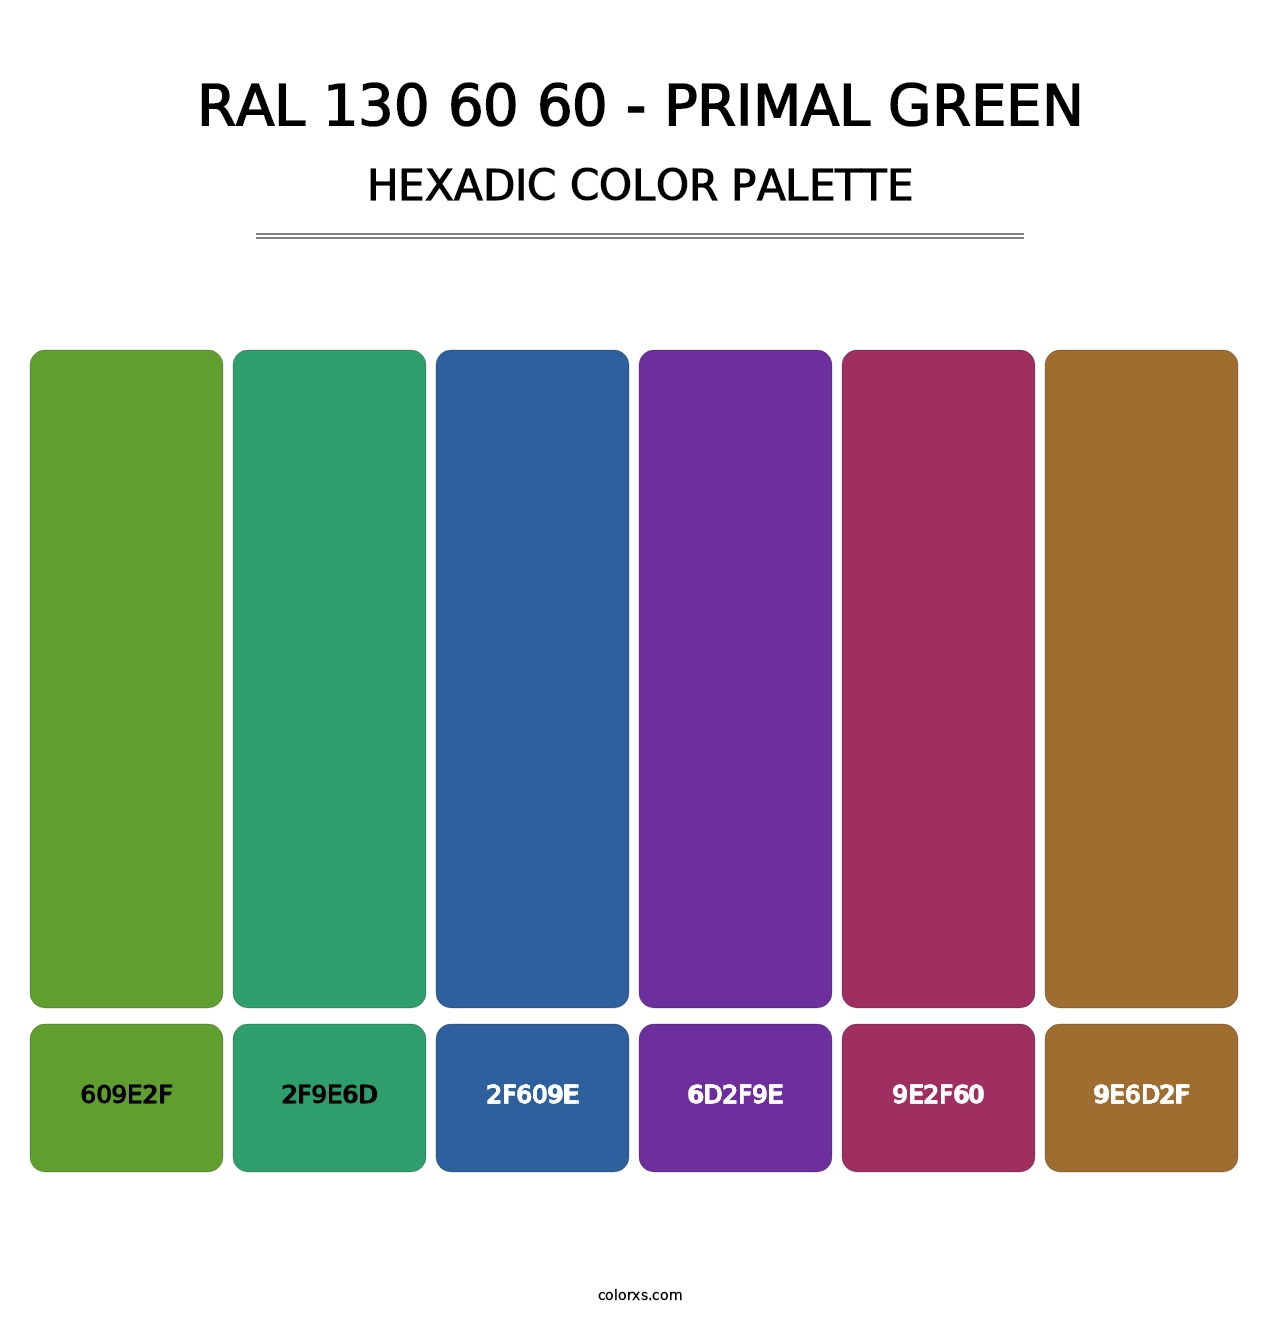 RAL 130 60 60 - Primal Green - Hexadic Color Palette